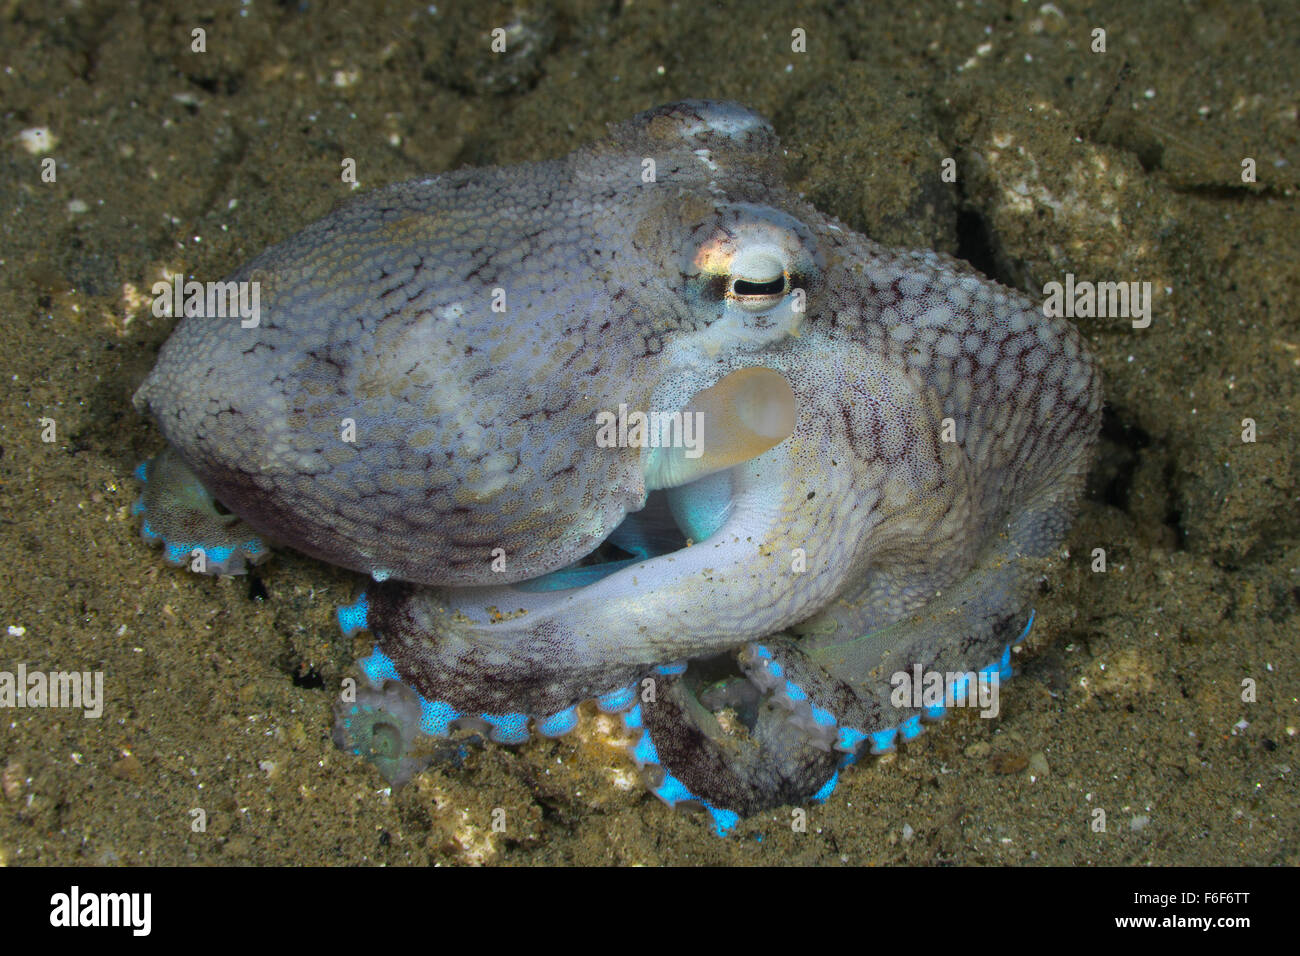 Veined Octopus, Octopus marginatus, Ambon, Indonesia Stock Photo